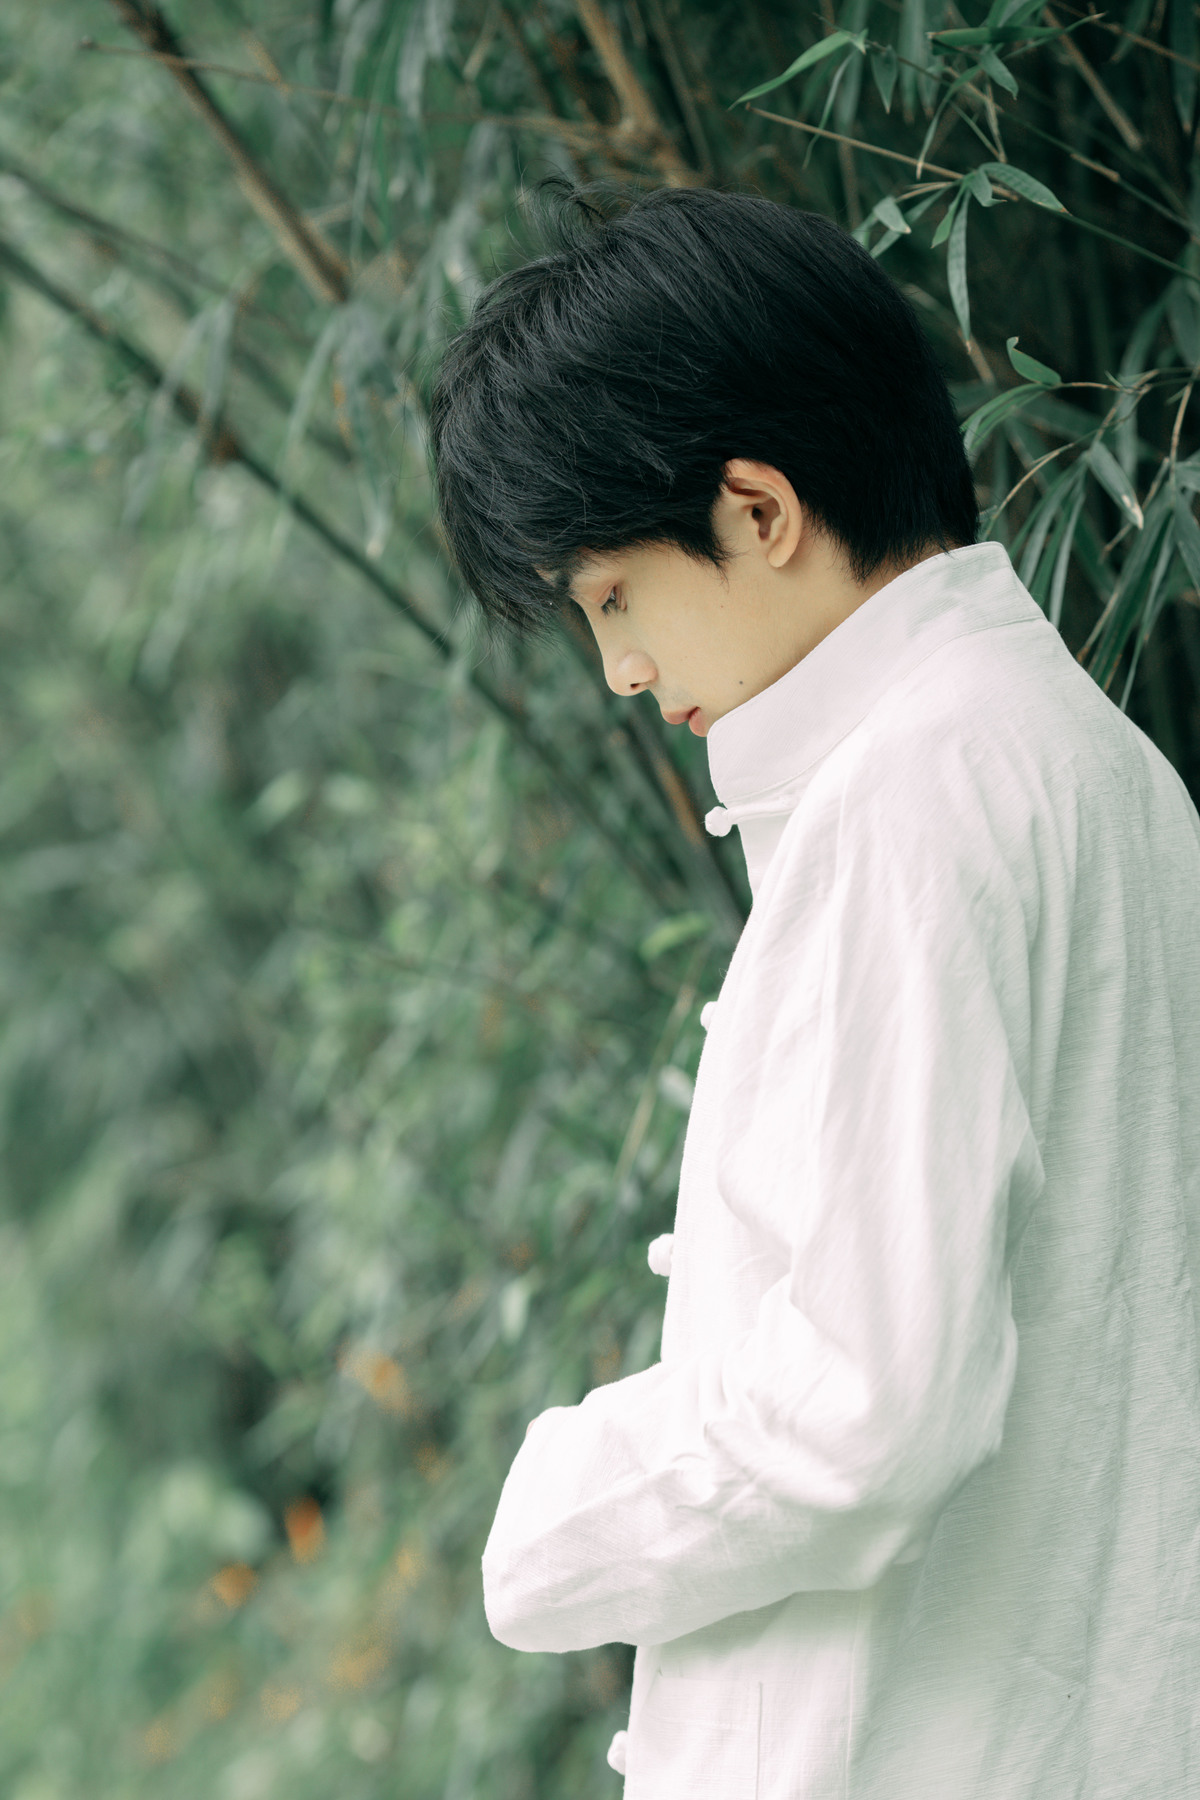 一个穿着白衬衫打着领带的年轻人站在一棵树前